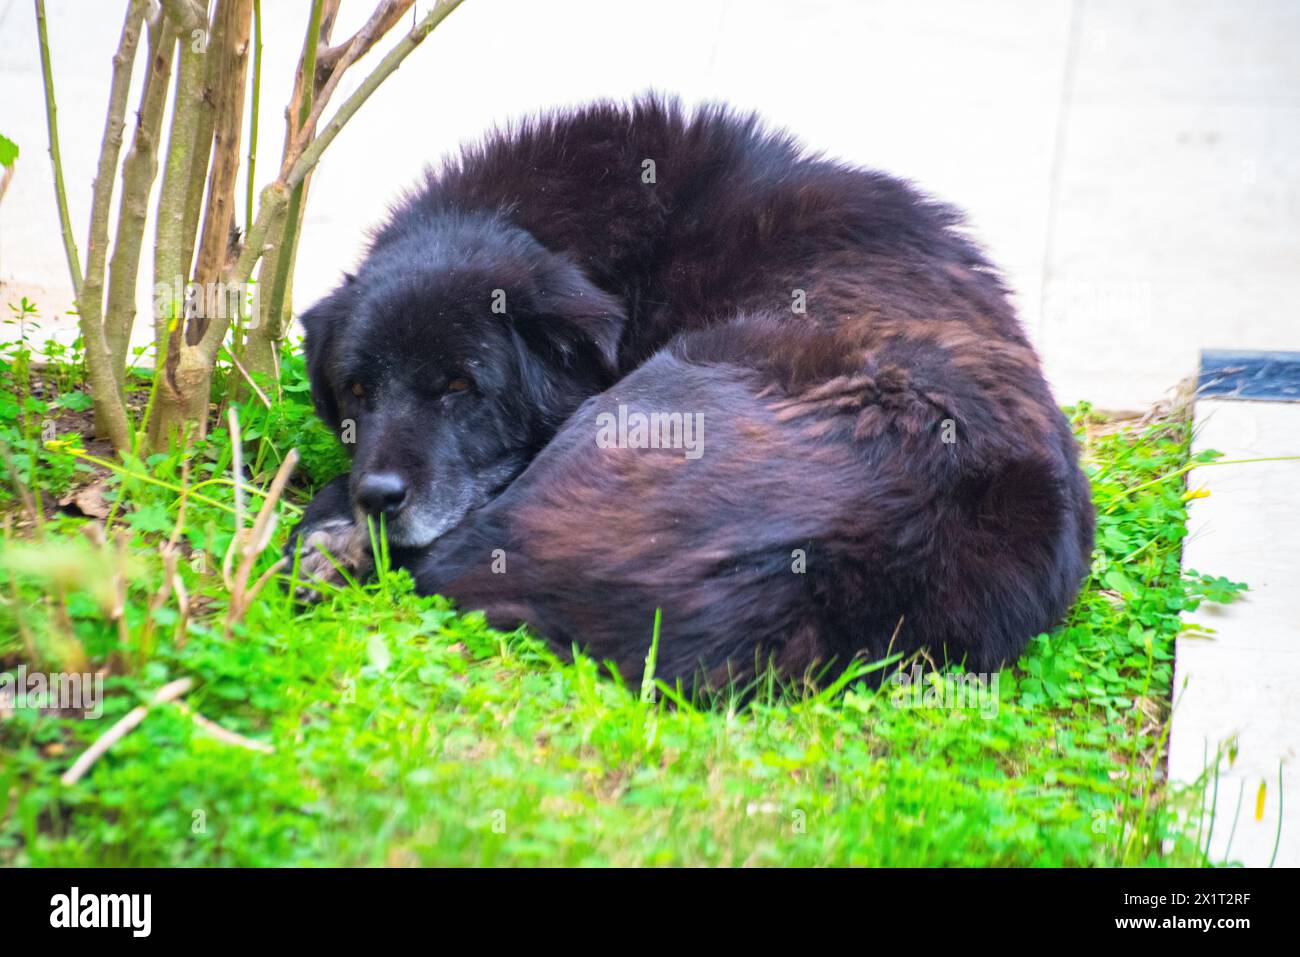 Finden Sie Ruhe in einem ruhigen Schlaf, während der verschlafene schwarze Hund im Garten liegt, eingebettet in das üppige grüne Gras. Stockfoto